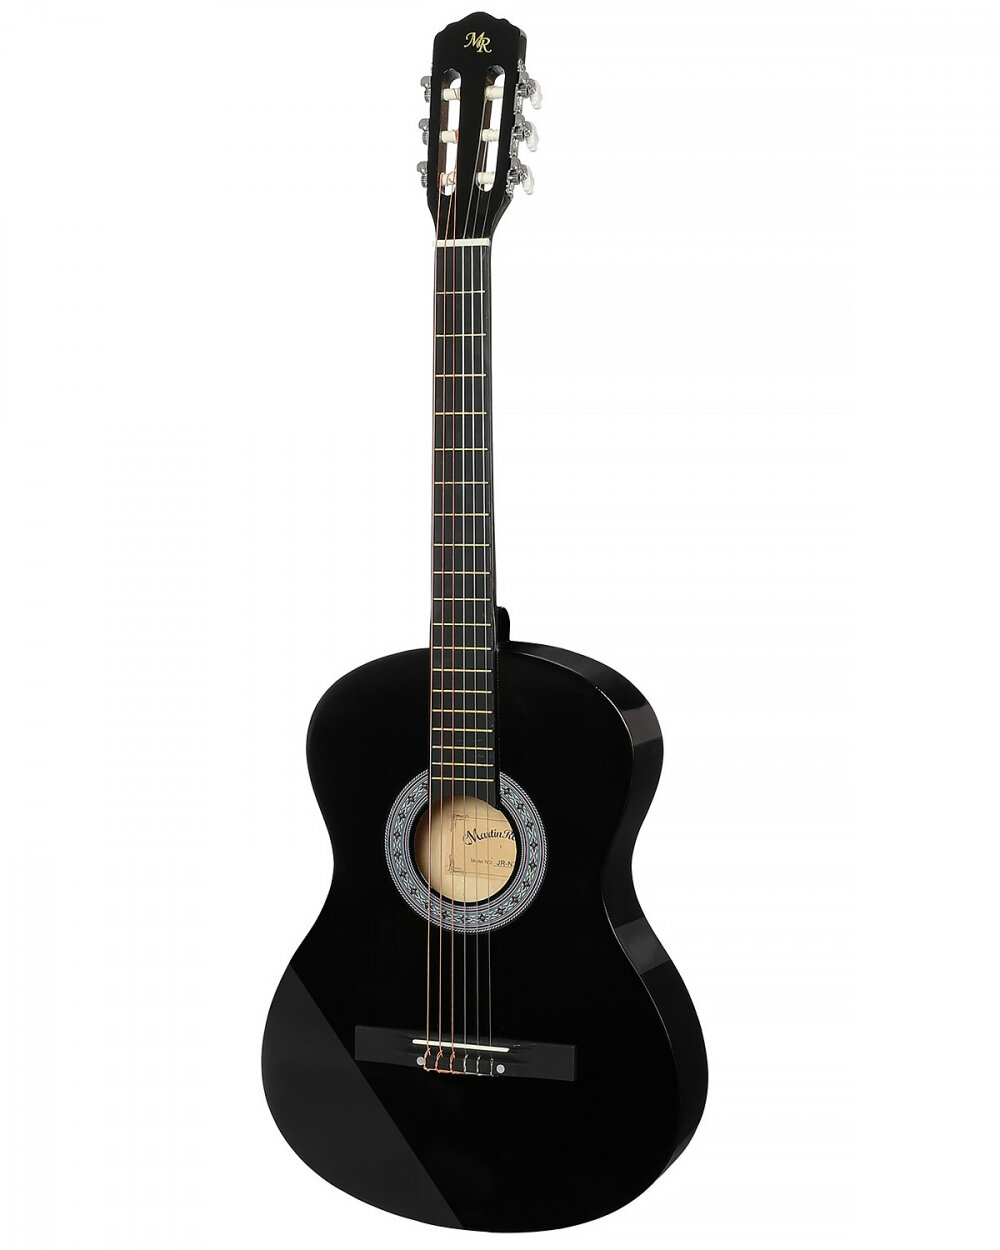 Гитара классическая MARTIN ROMAS PACK JR-340 BK 1/2 набор гитариста